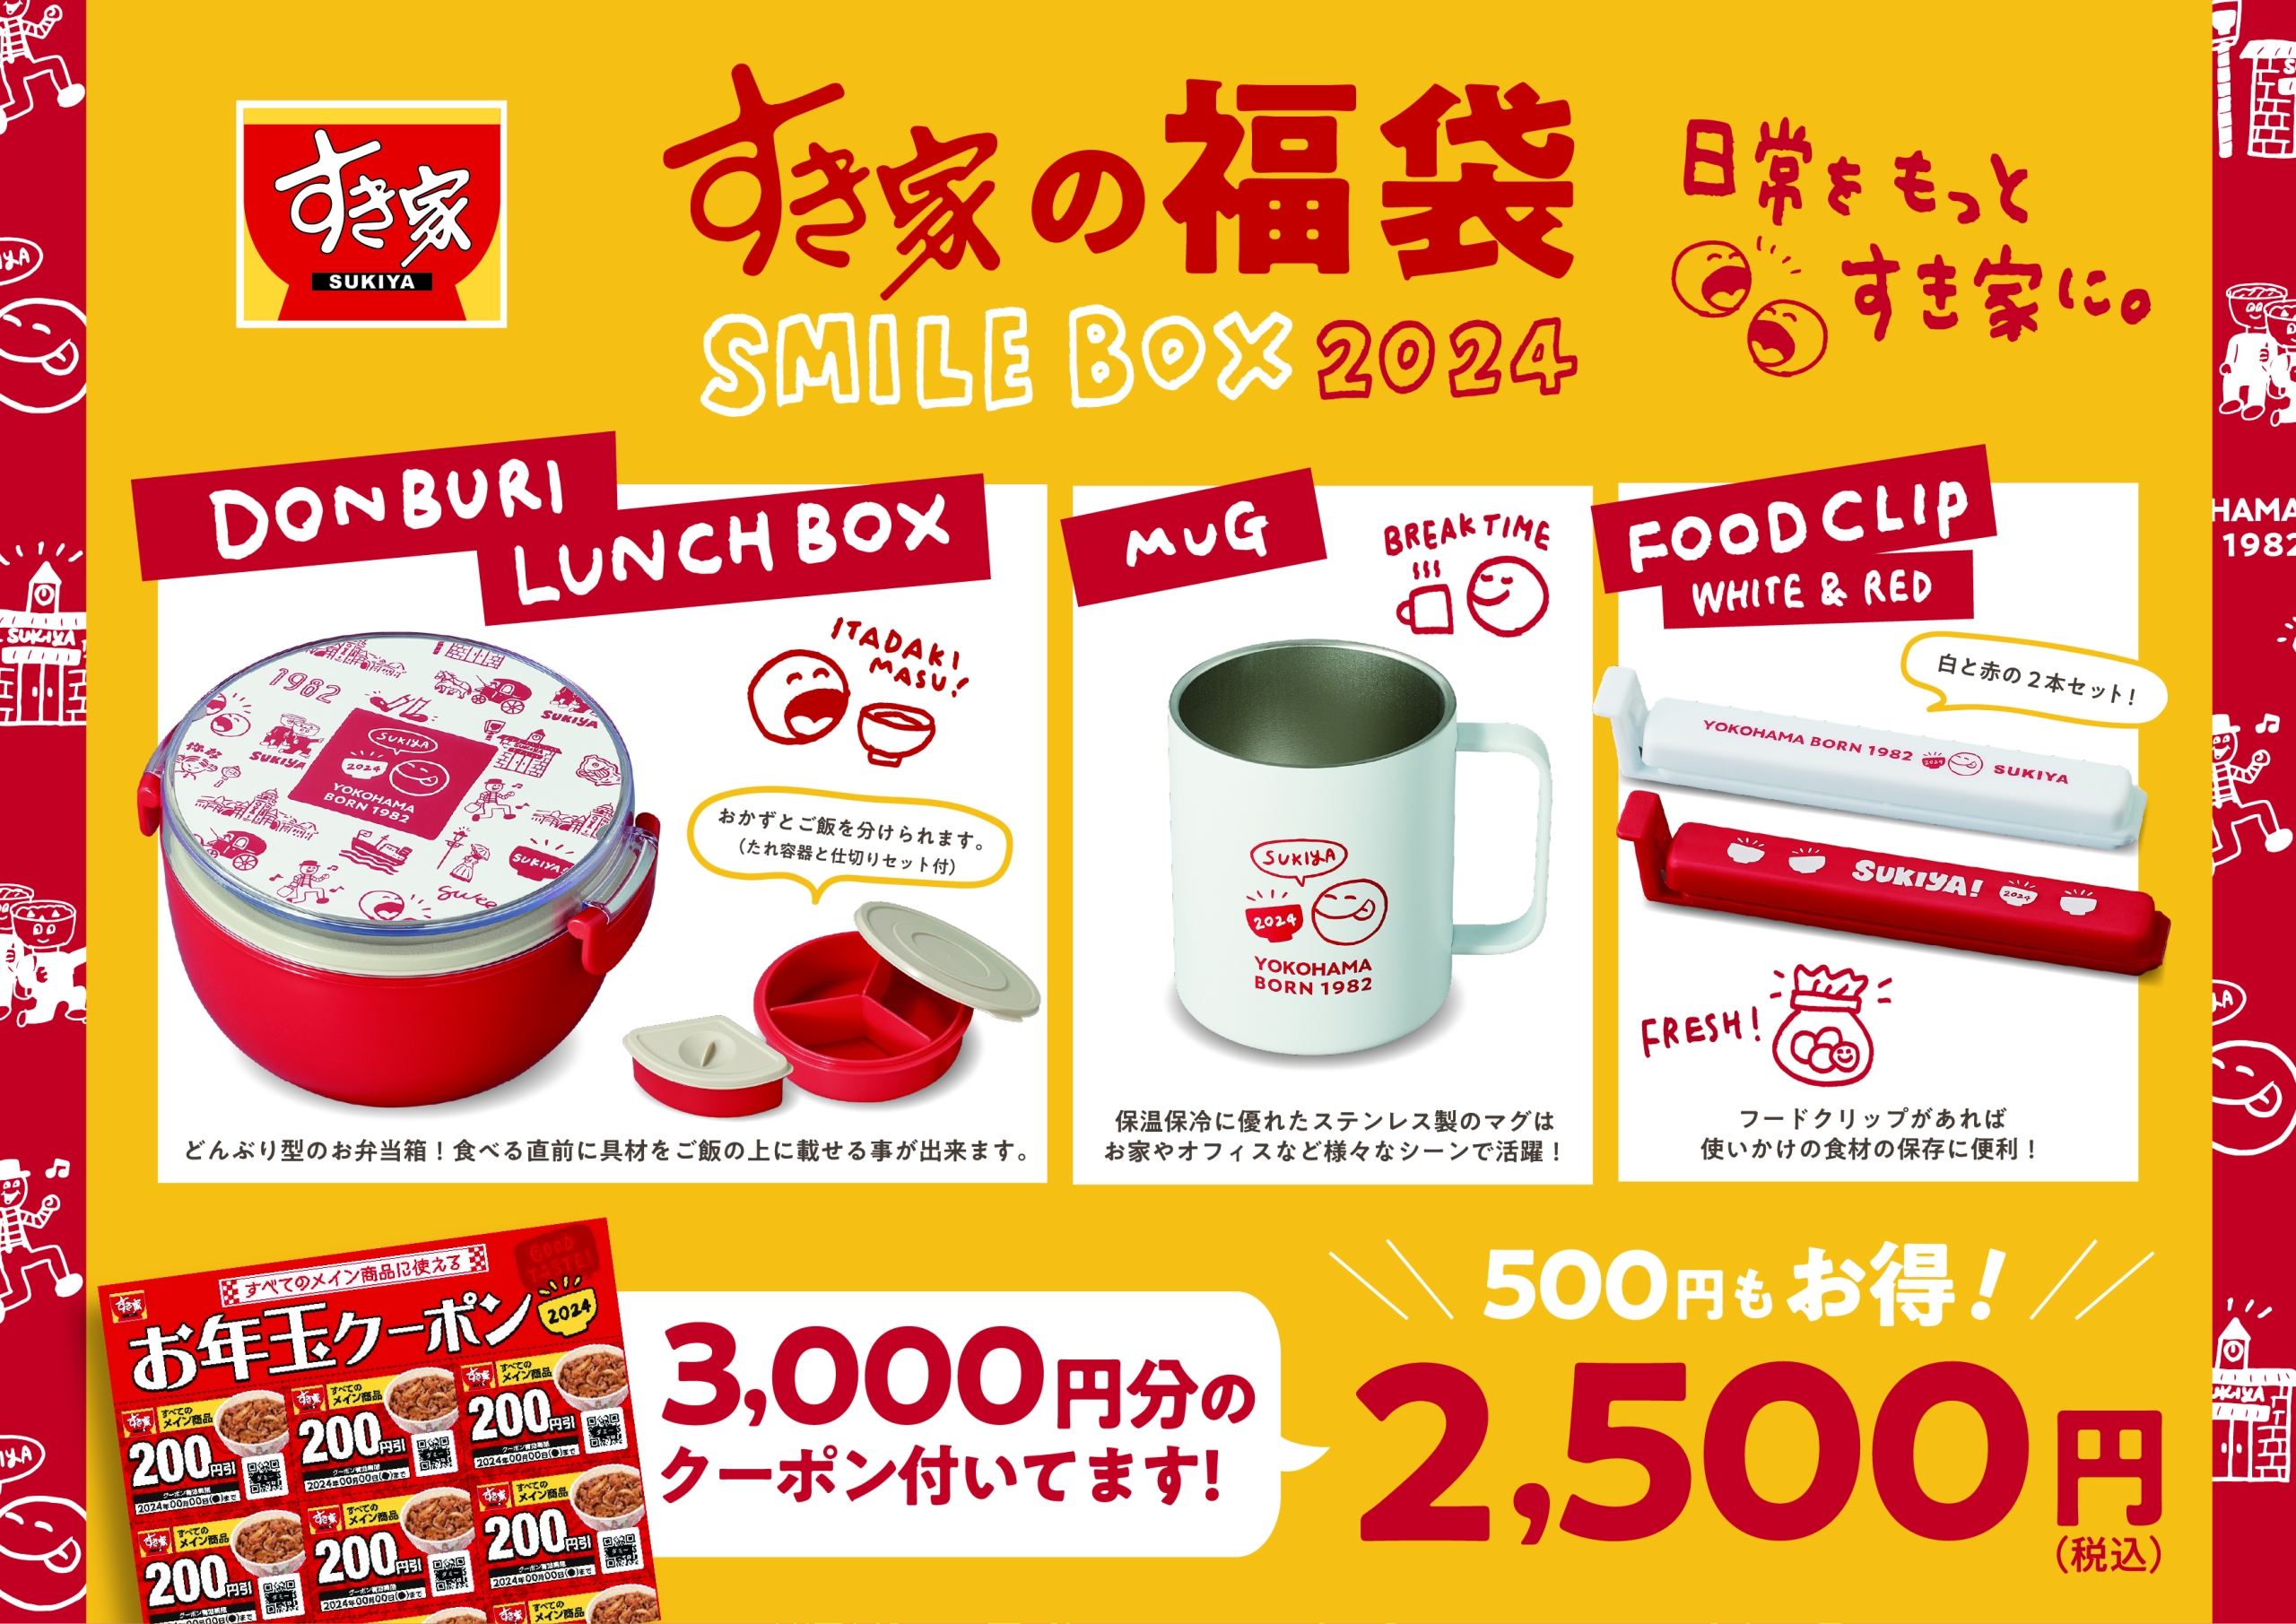 すき家の福袋「SMILE BOX 2024(スマイルボックス2024)」